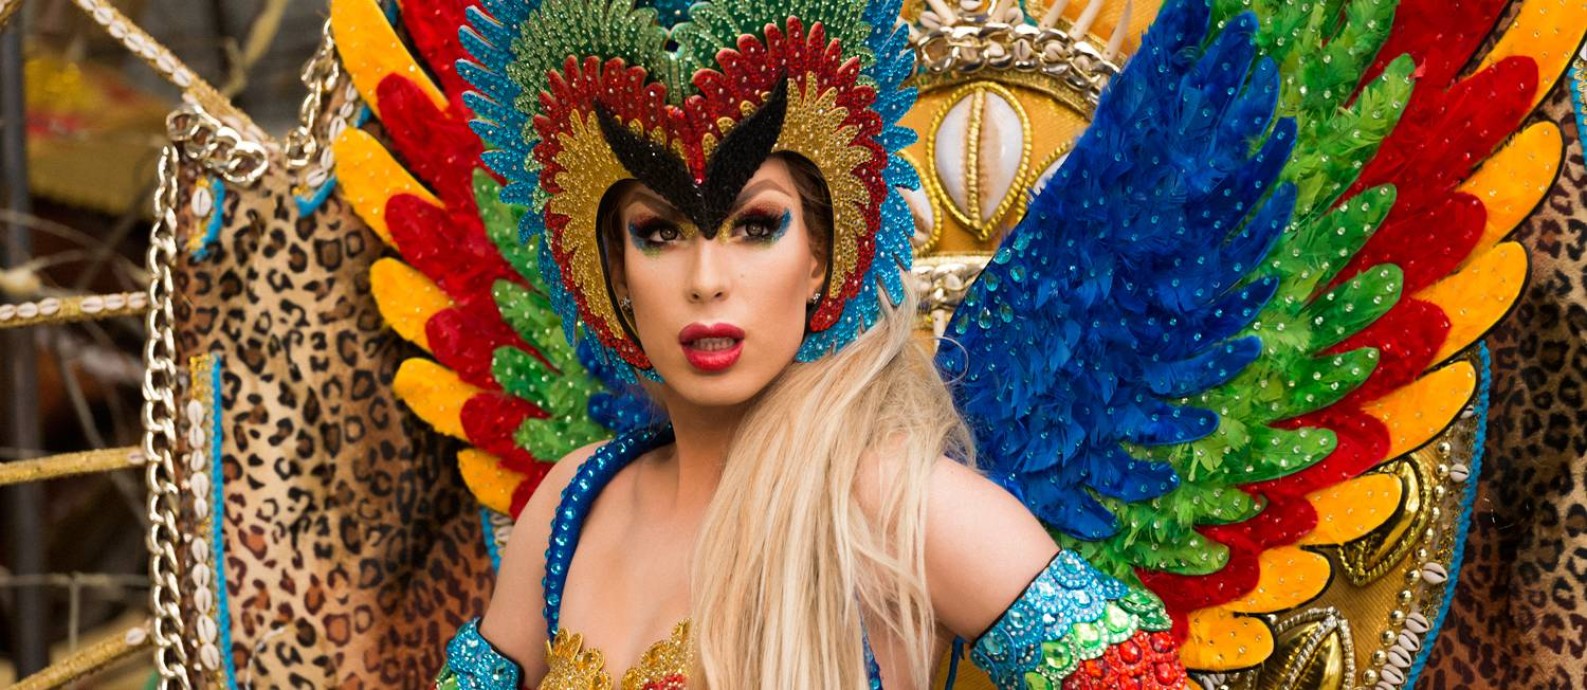 A drag queen Alaska Thunderfuck no clipe 'Come to Brazil' Foto: Cassio Tassi/Divulgação